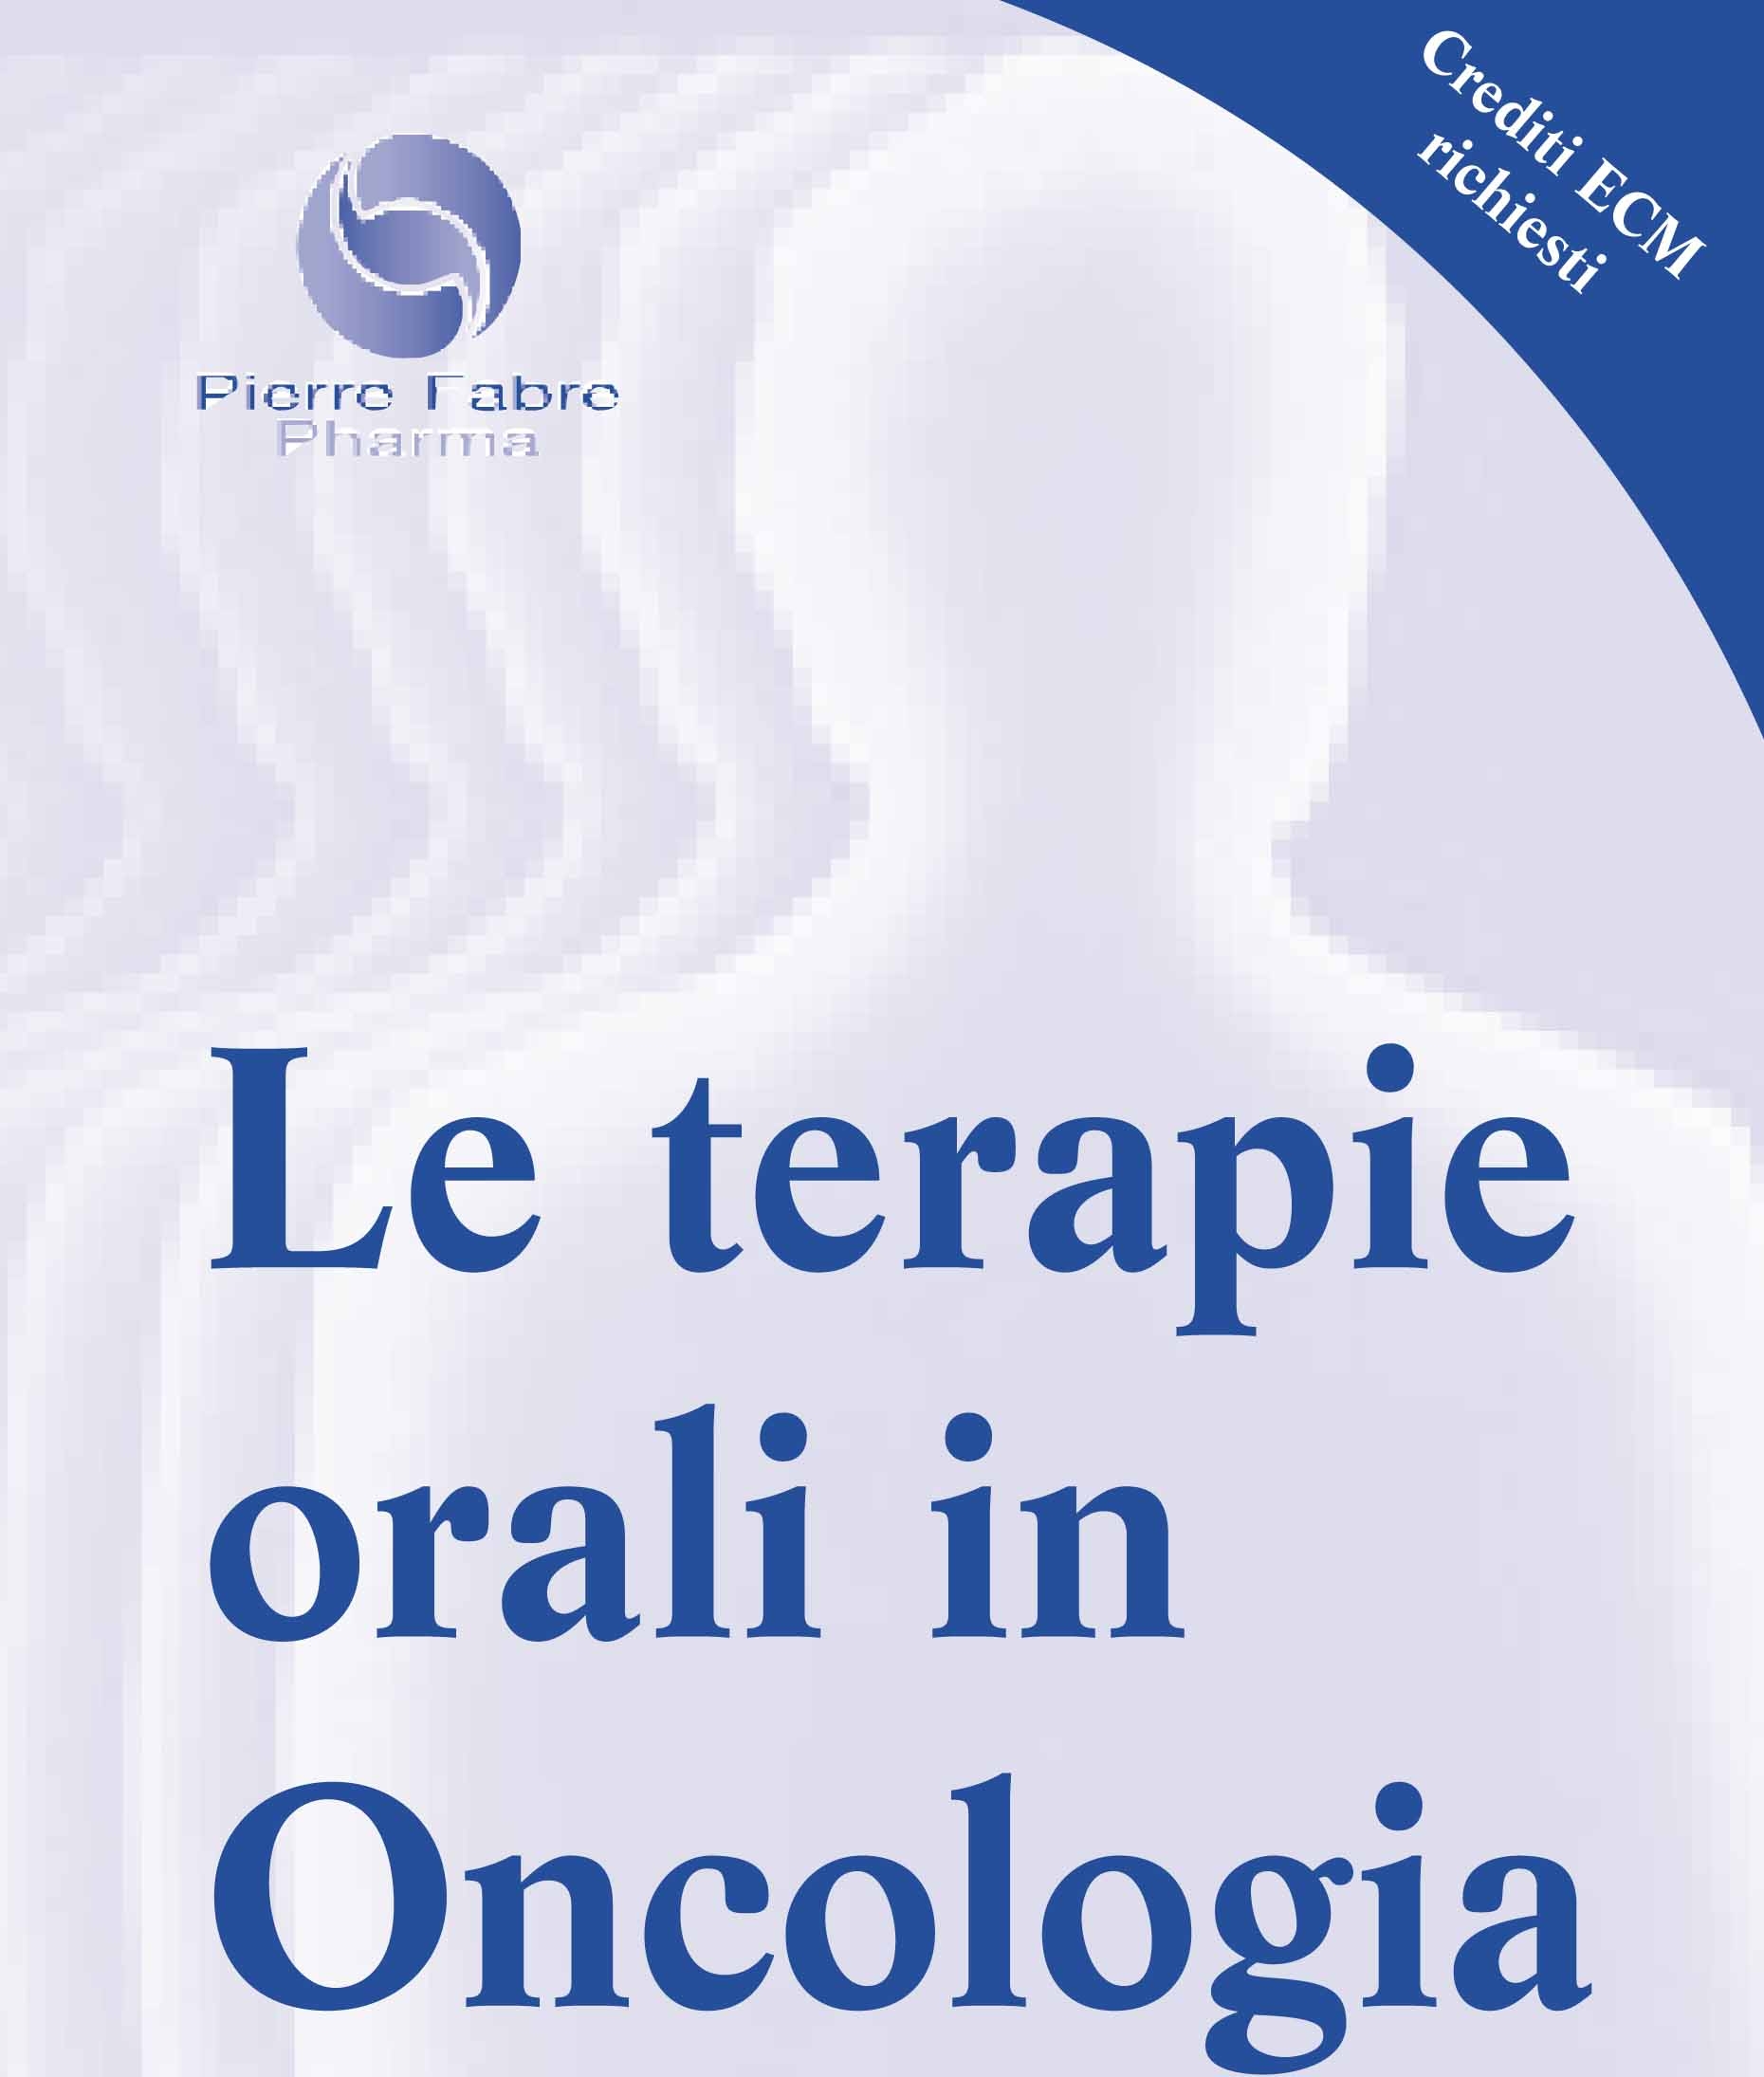 Le Terapie orali in oncologia 